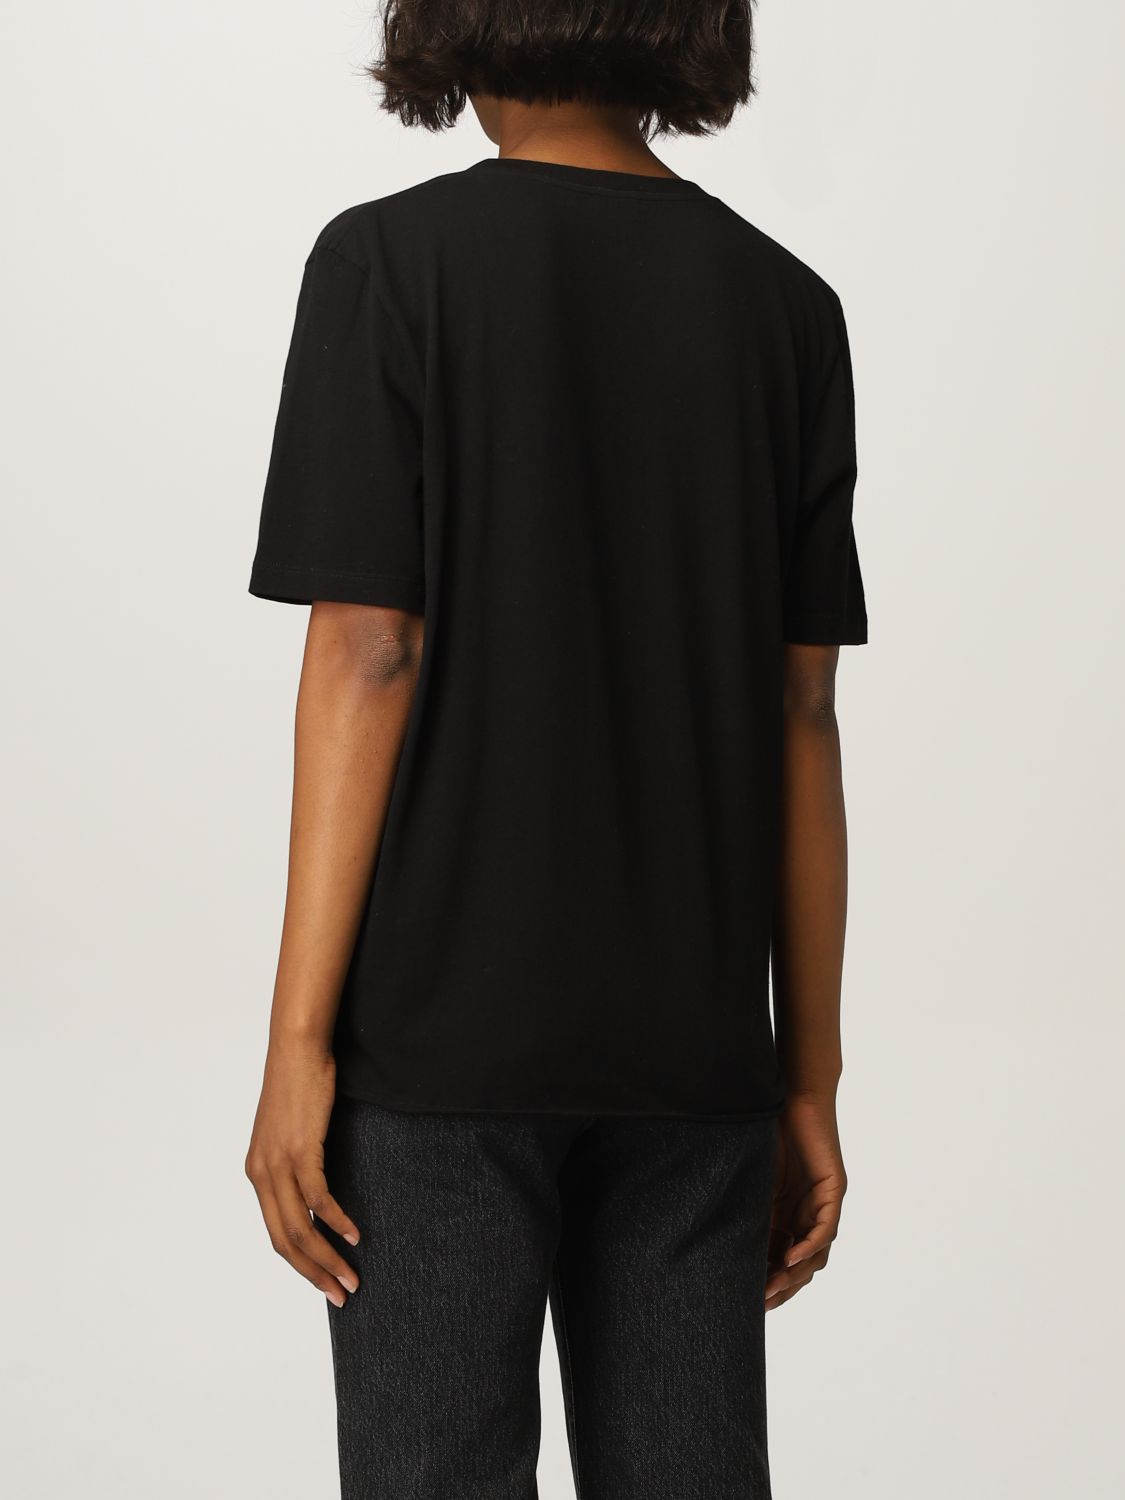 Camiseta Saint Laurent: Camiseta mujer Saint Laurent negro 3